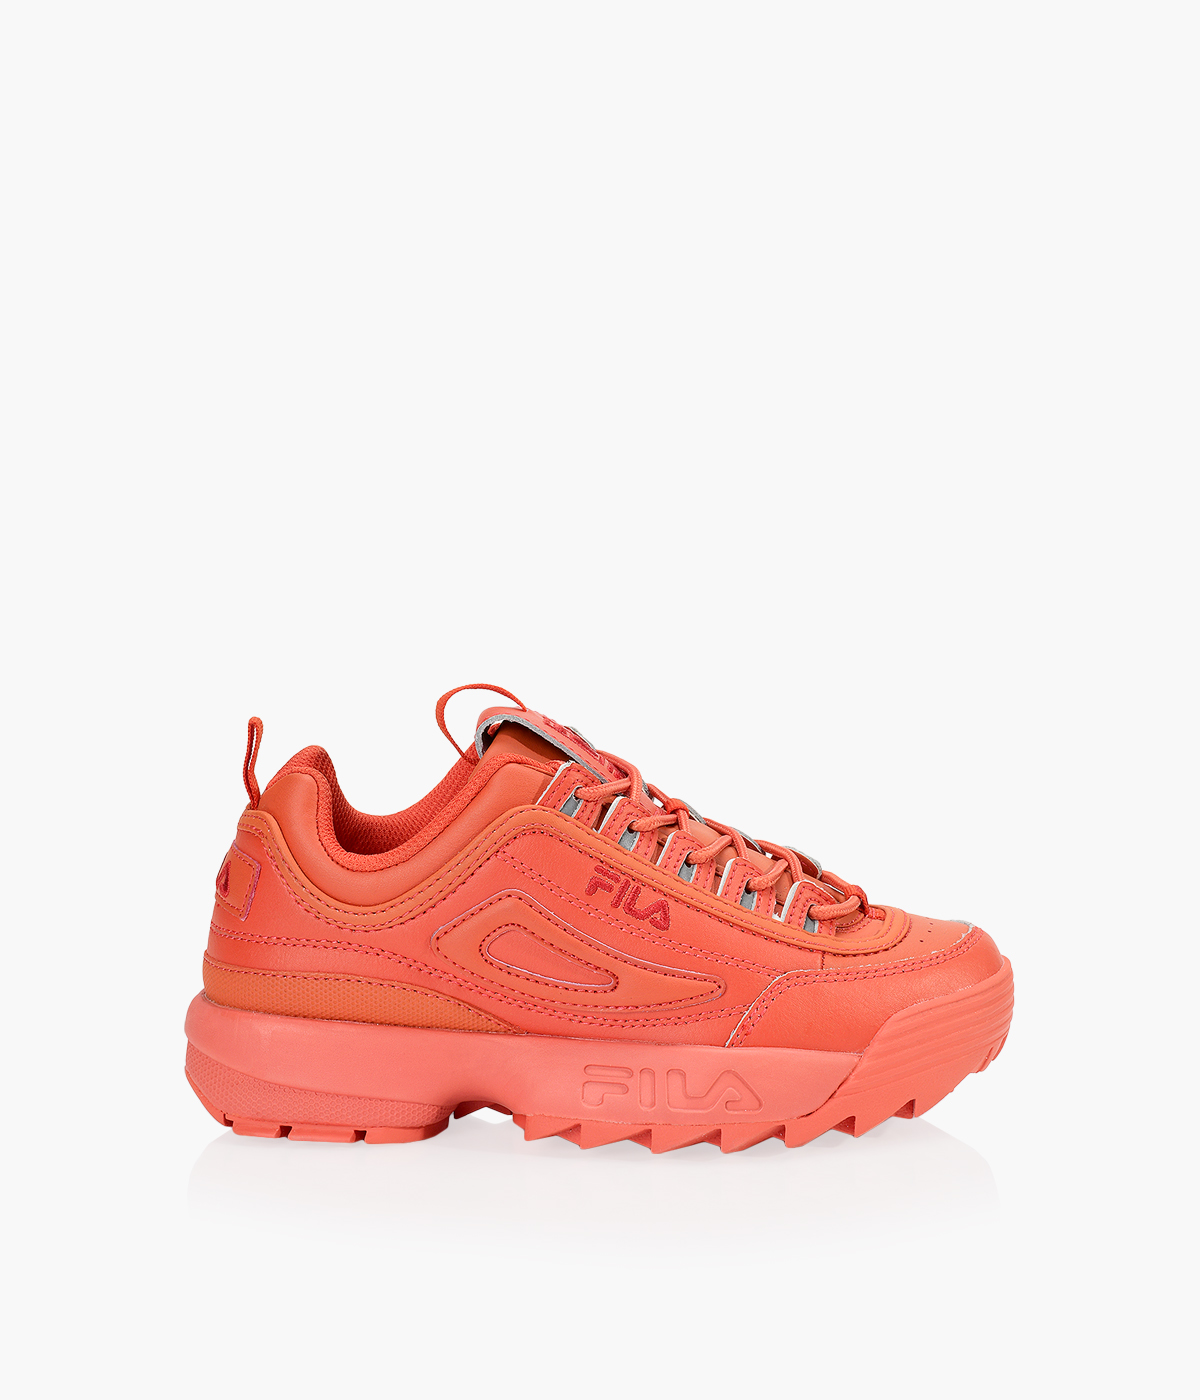 Women's orange FILA Disruptor II sneakers / shoes , size 7.5 | eBay